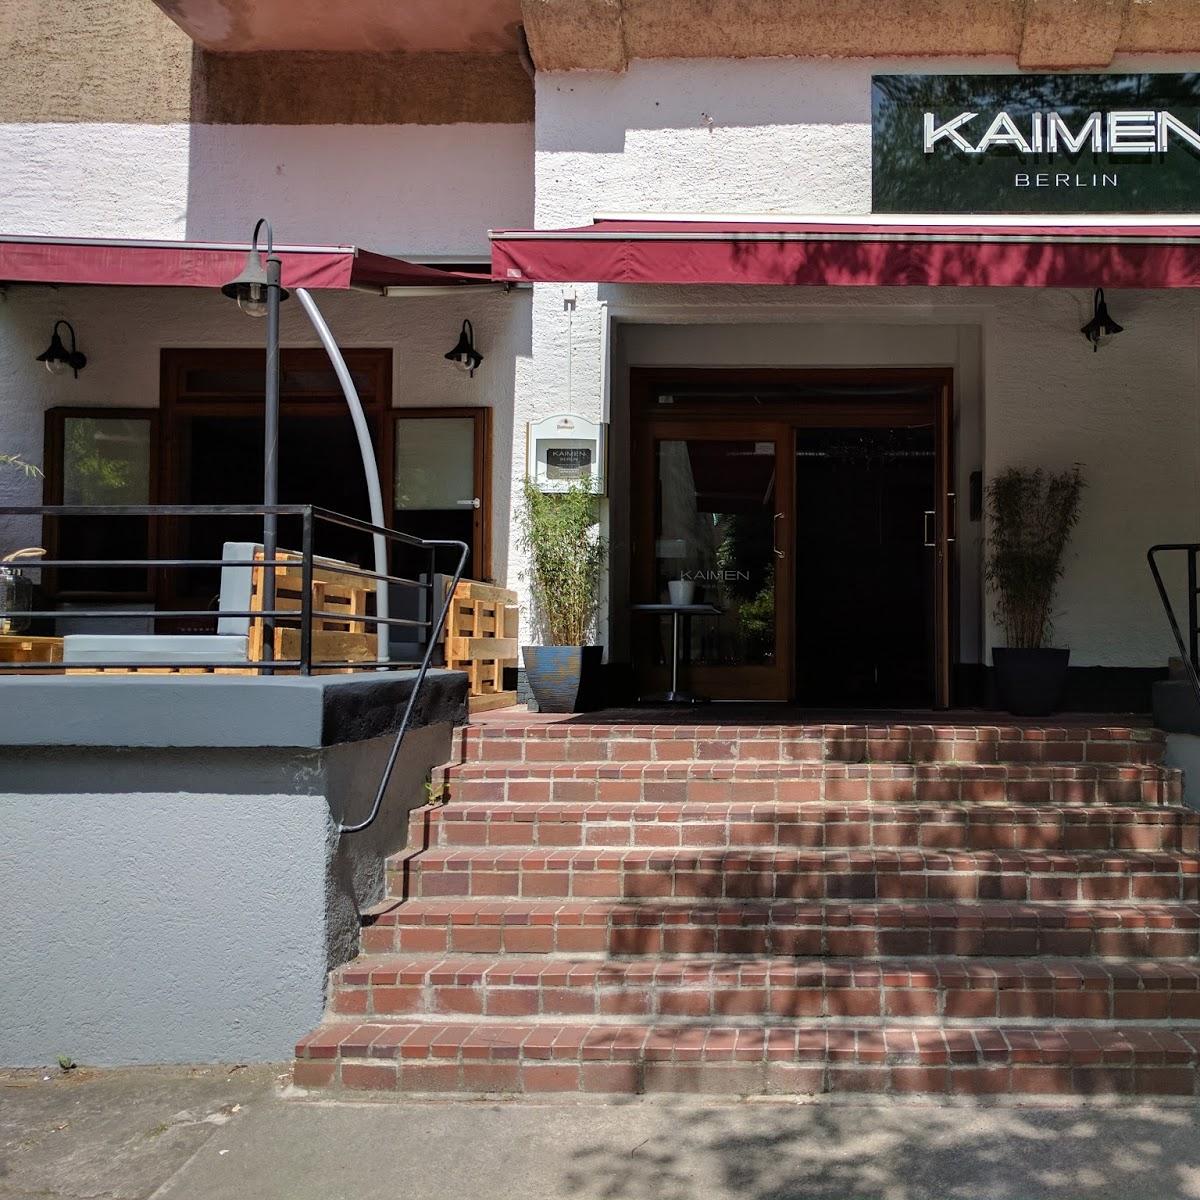 Restaurant "Kaimen" in Berlin